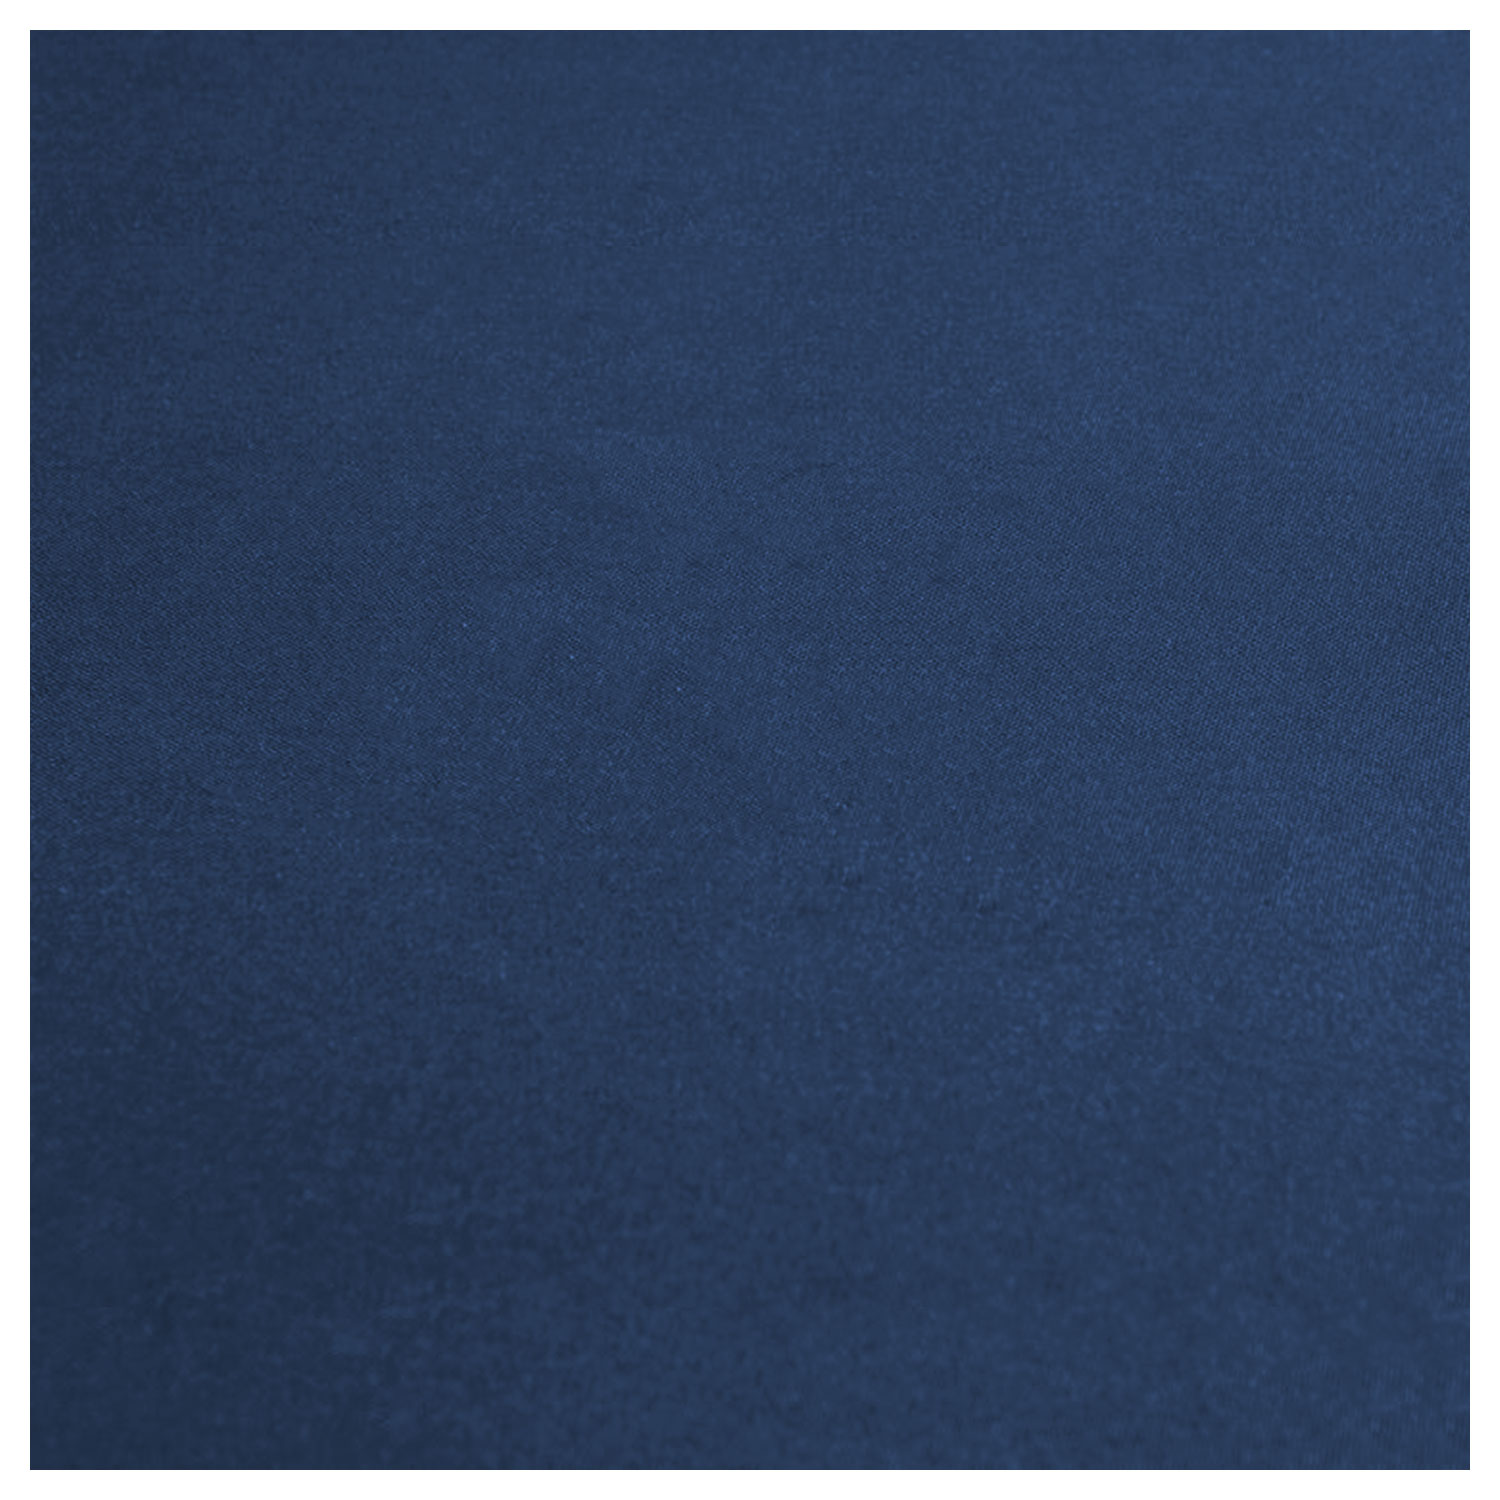 Gartenmöbel IBIZA aus blauem Stoff 4-Sitzer - Weißaluminium